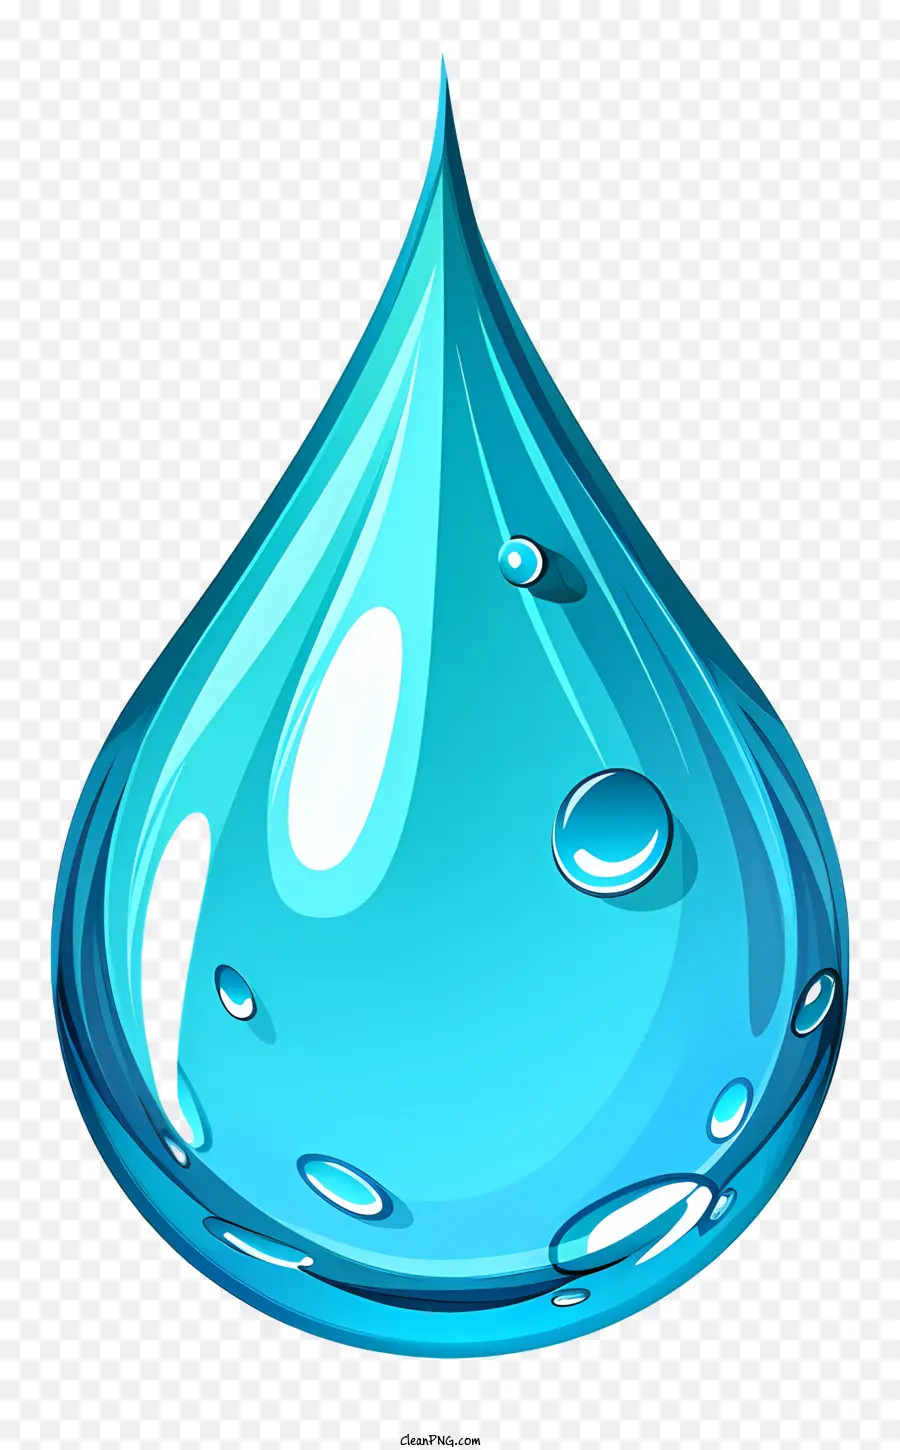 goccia d'acqua - Primo piano di gocciola d'acqua blu limpida e lucida